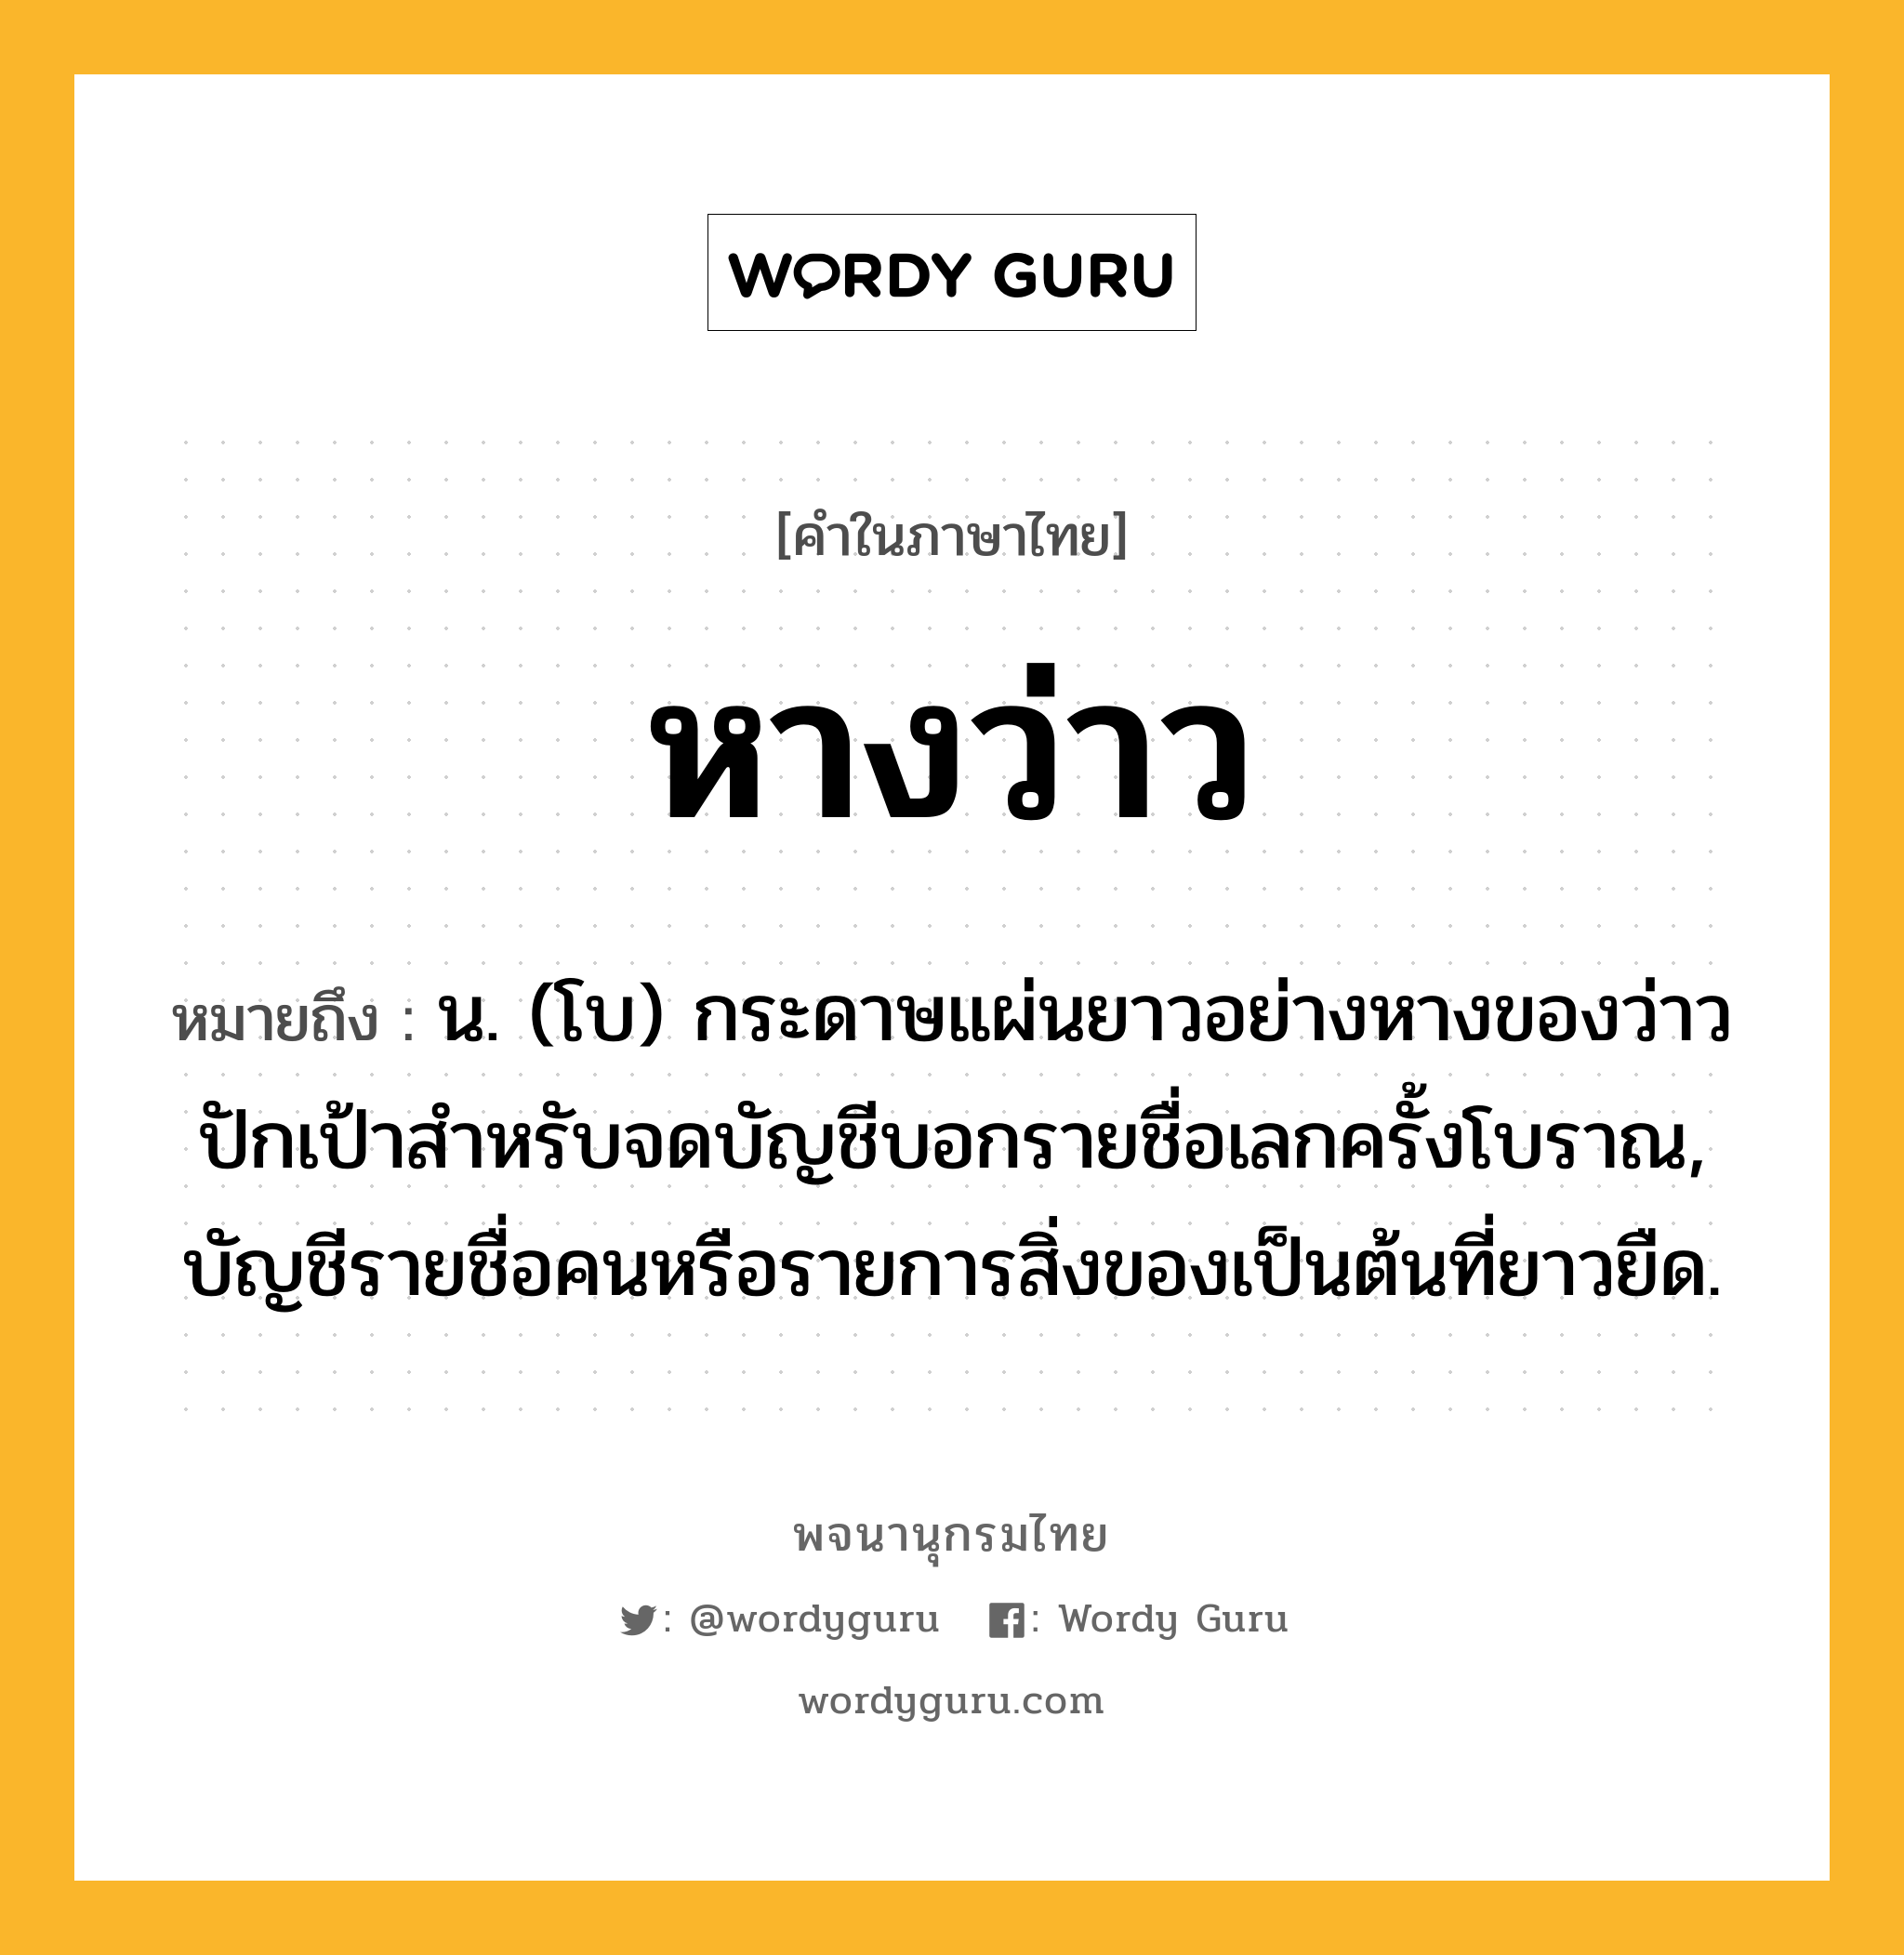 หางว่าว ความหมาย หมายถึงอะไร?, คำในภาษาไทย หางว่าว หมายถึง น. (โบ) กระดาษแผ่นยาวอย่างหางของว่าวปักเป้าสําหรับจดบัญชีบอกรายชื่อเลกครั้งโบราณ, บัญชีรายชื่อคนหรือรายการสิ่งของเป็นต้นที่ยาวยืด.